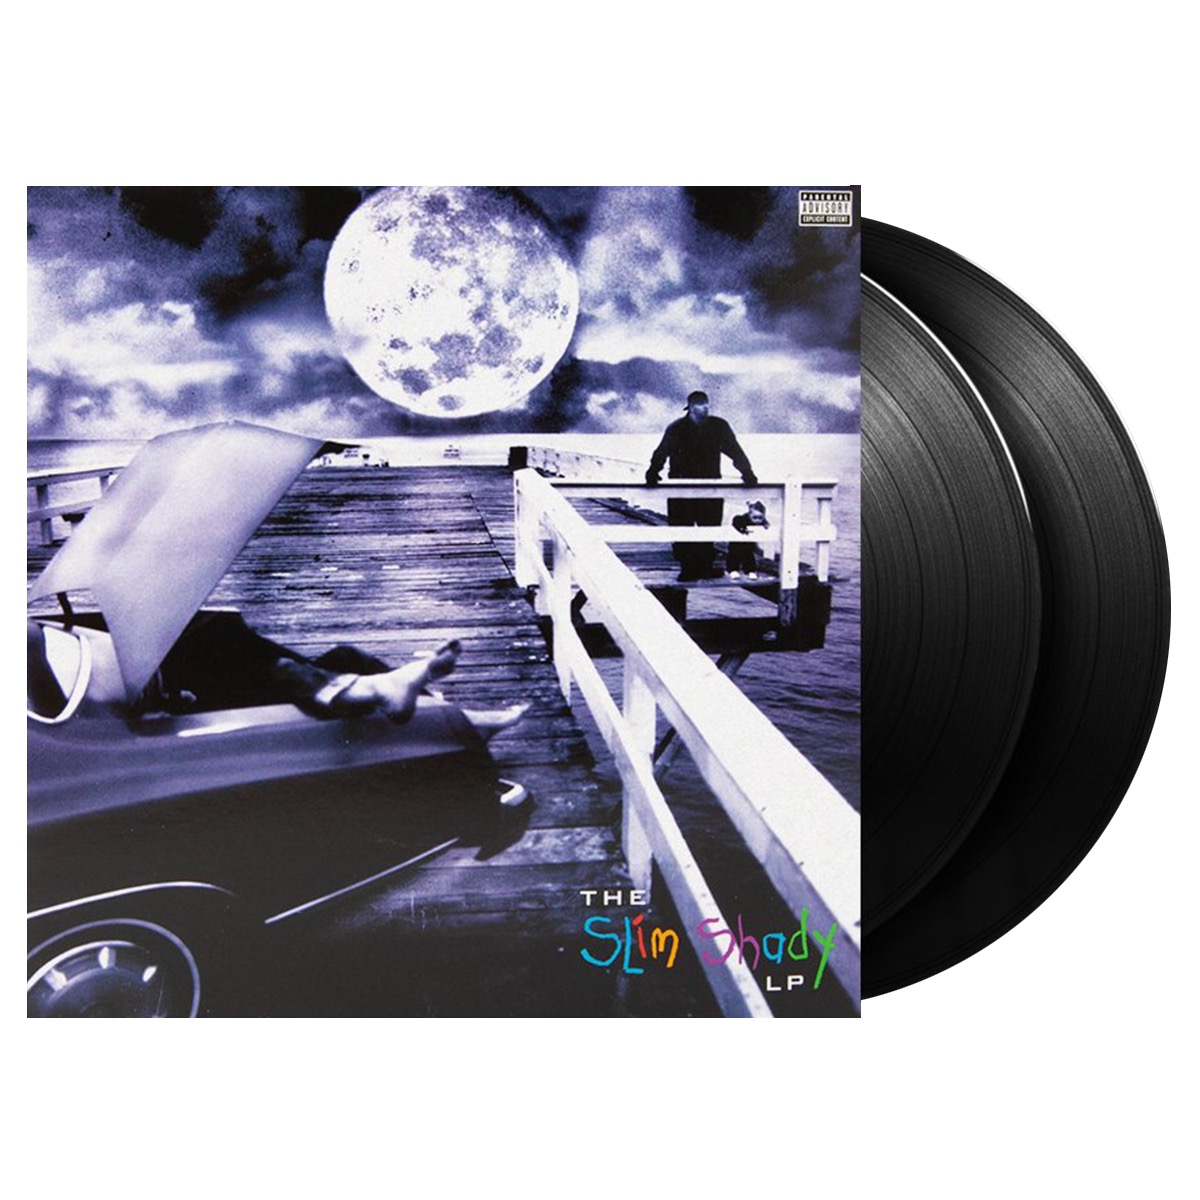 Eminem - The Slim Shady LP (2LP)